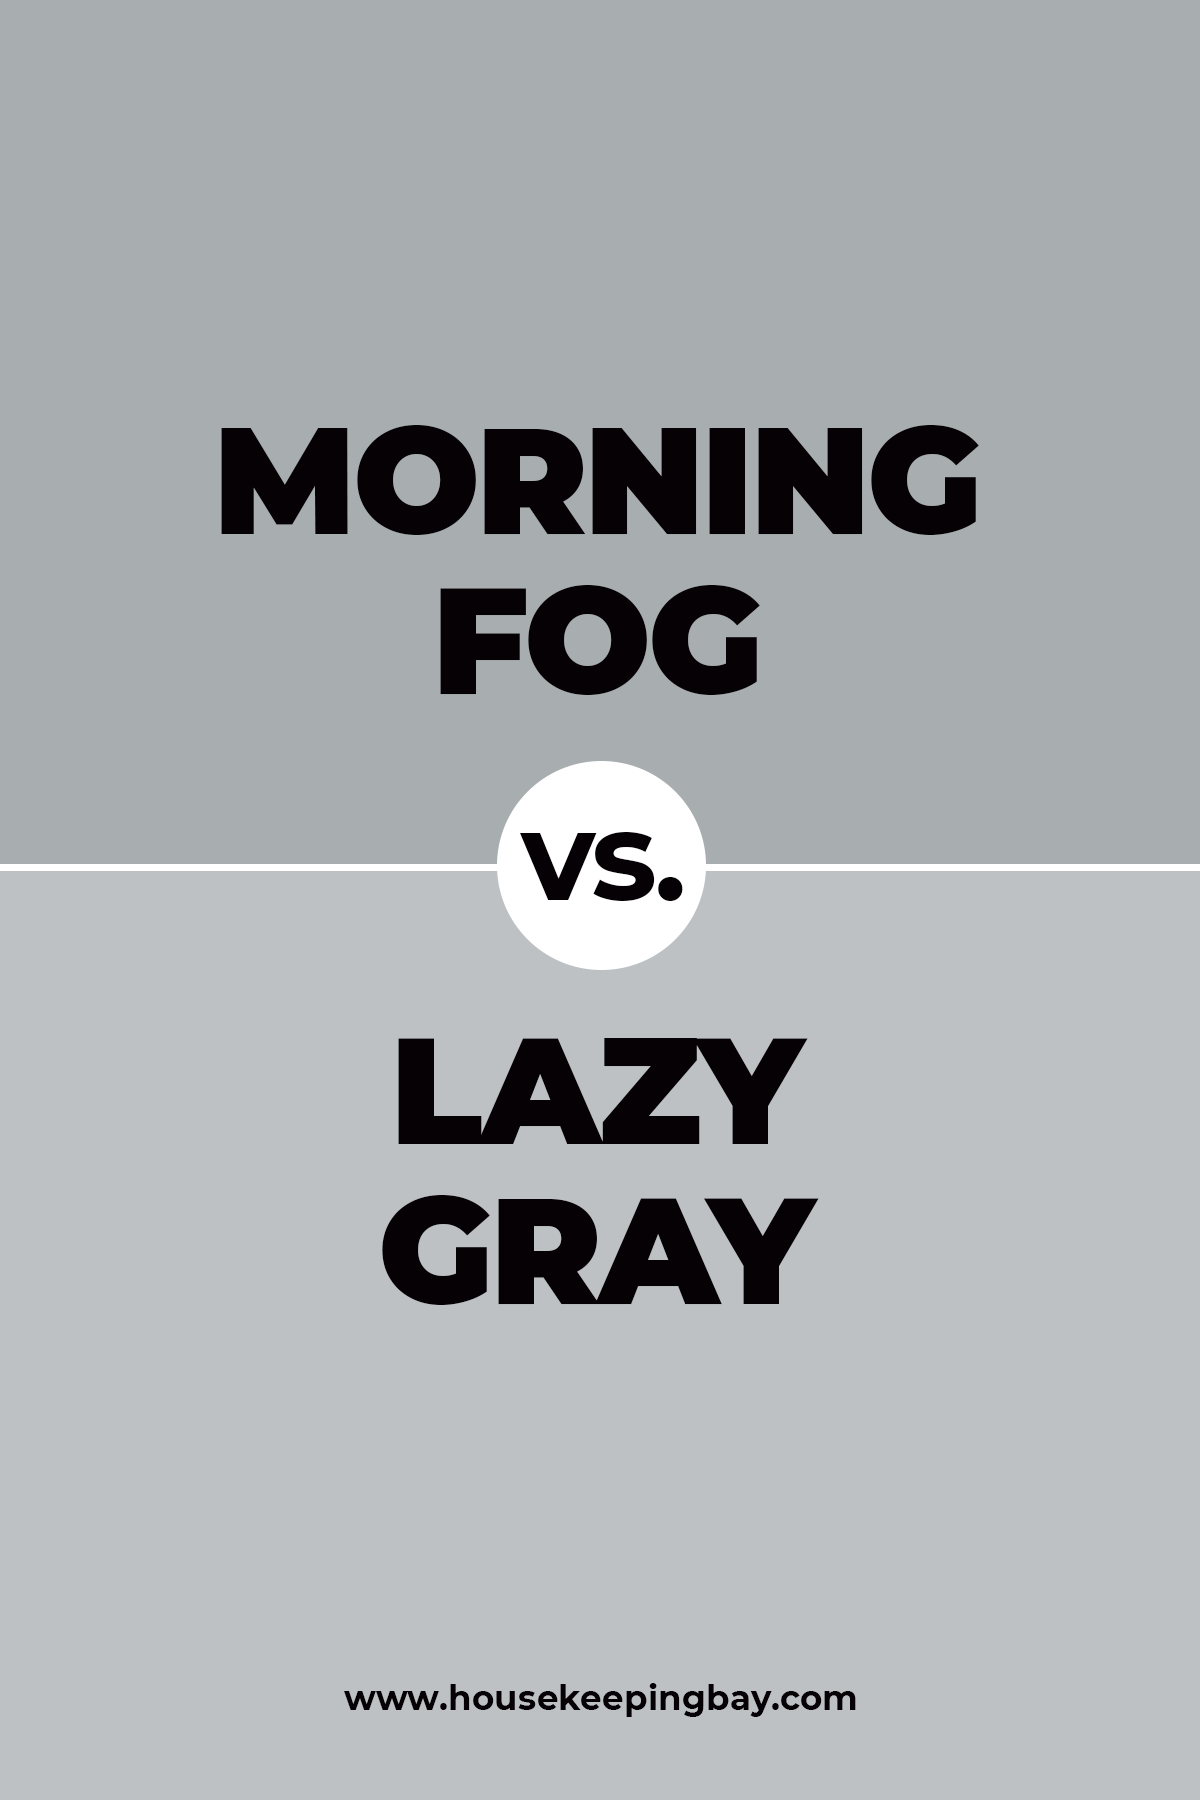 Morning fog vs Lazy gray